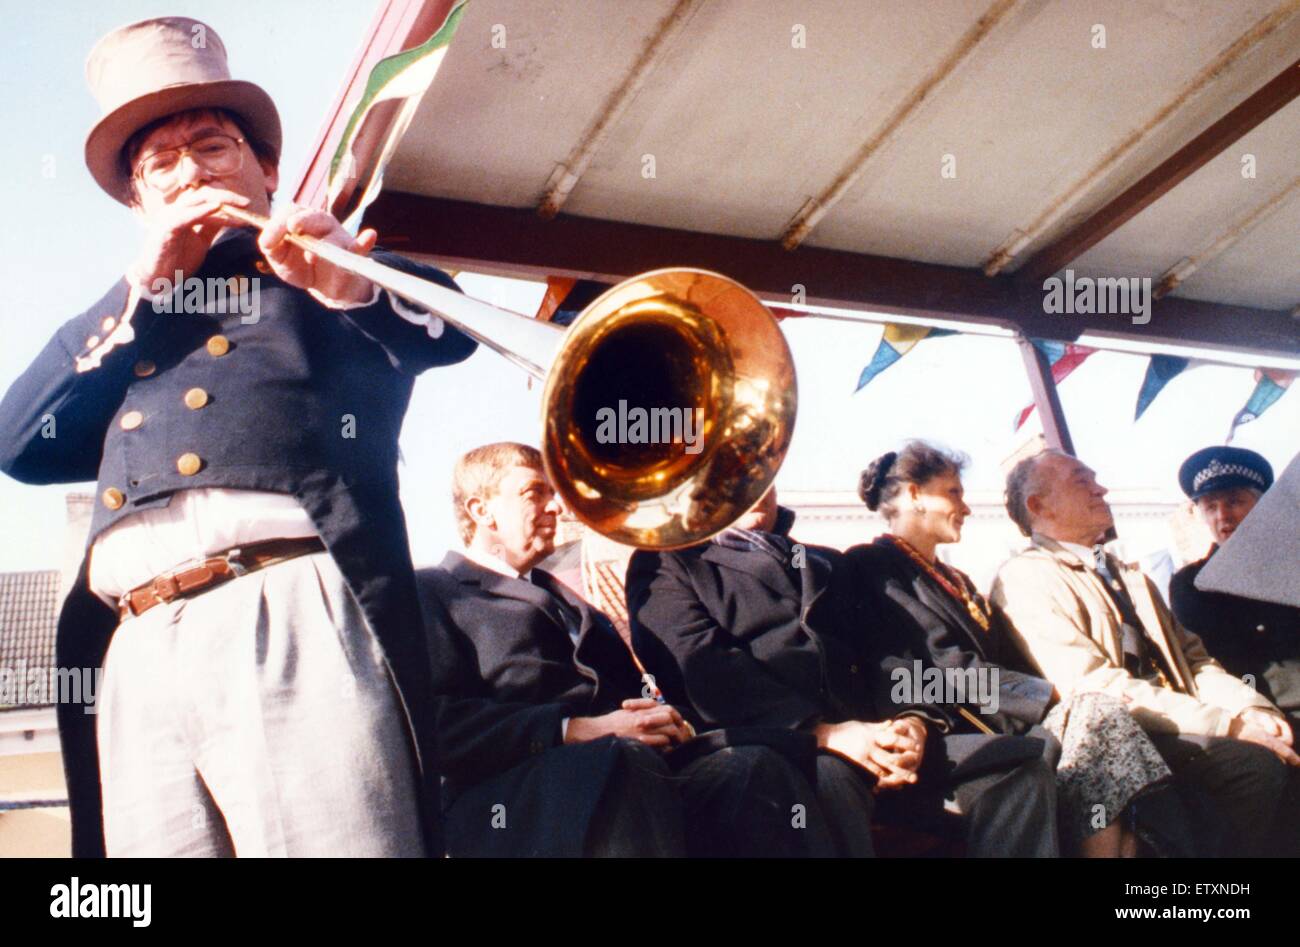 Ian Dewar von YARN klingt das Posthorn um den Anfang von "Reiten der Messe" bei Yarn markieren. 19. Oktober 1991. Stockfoto